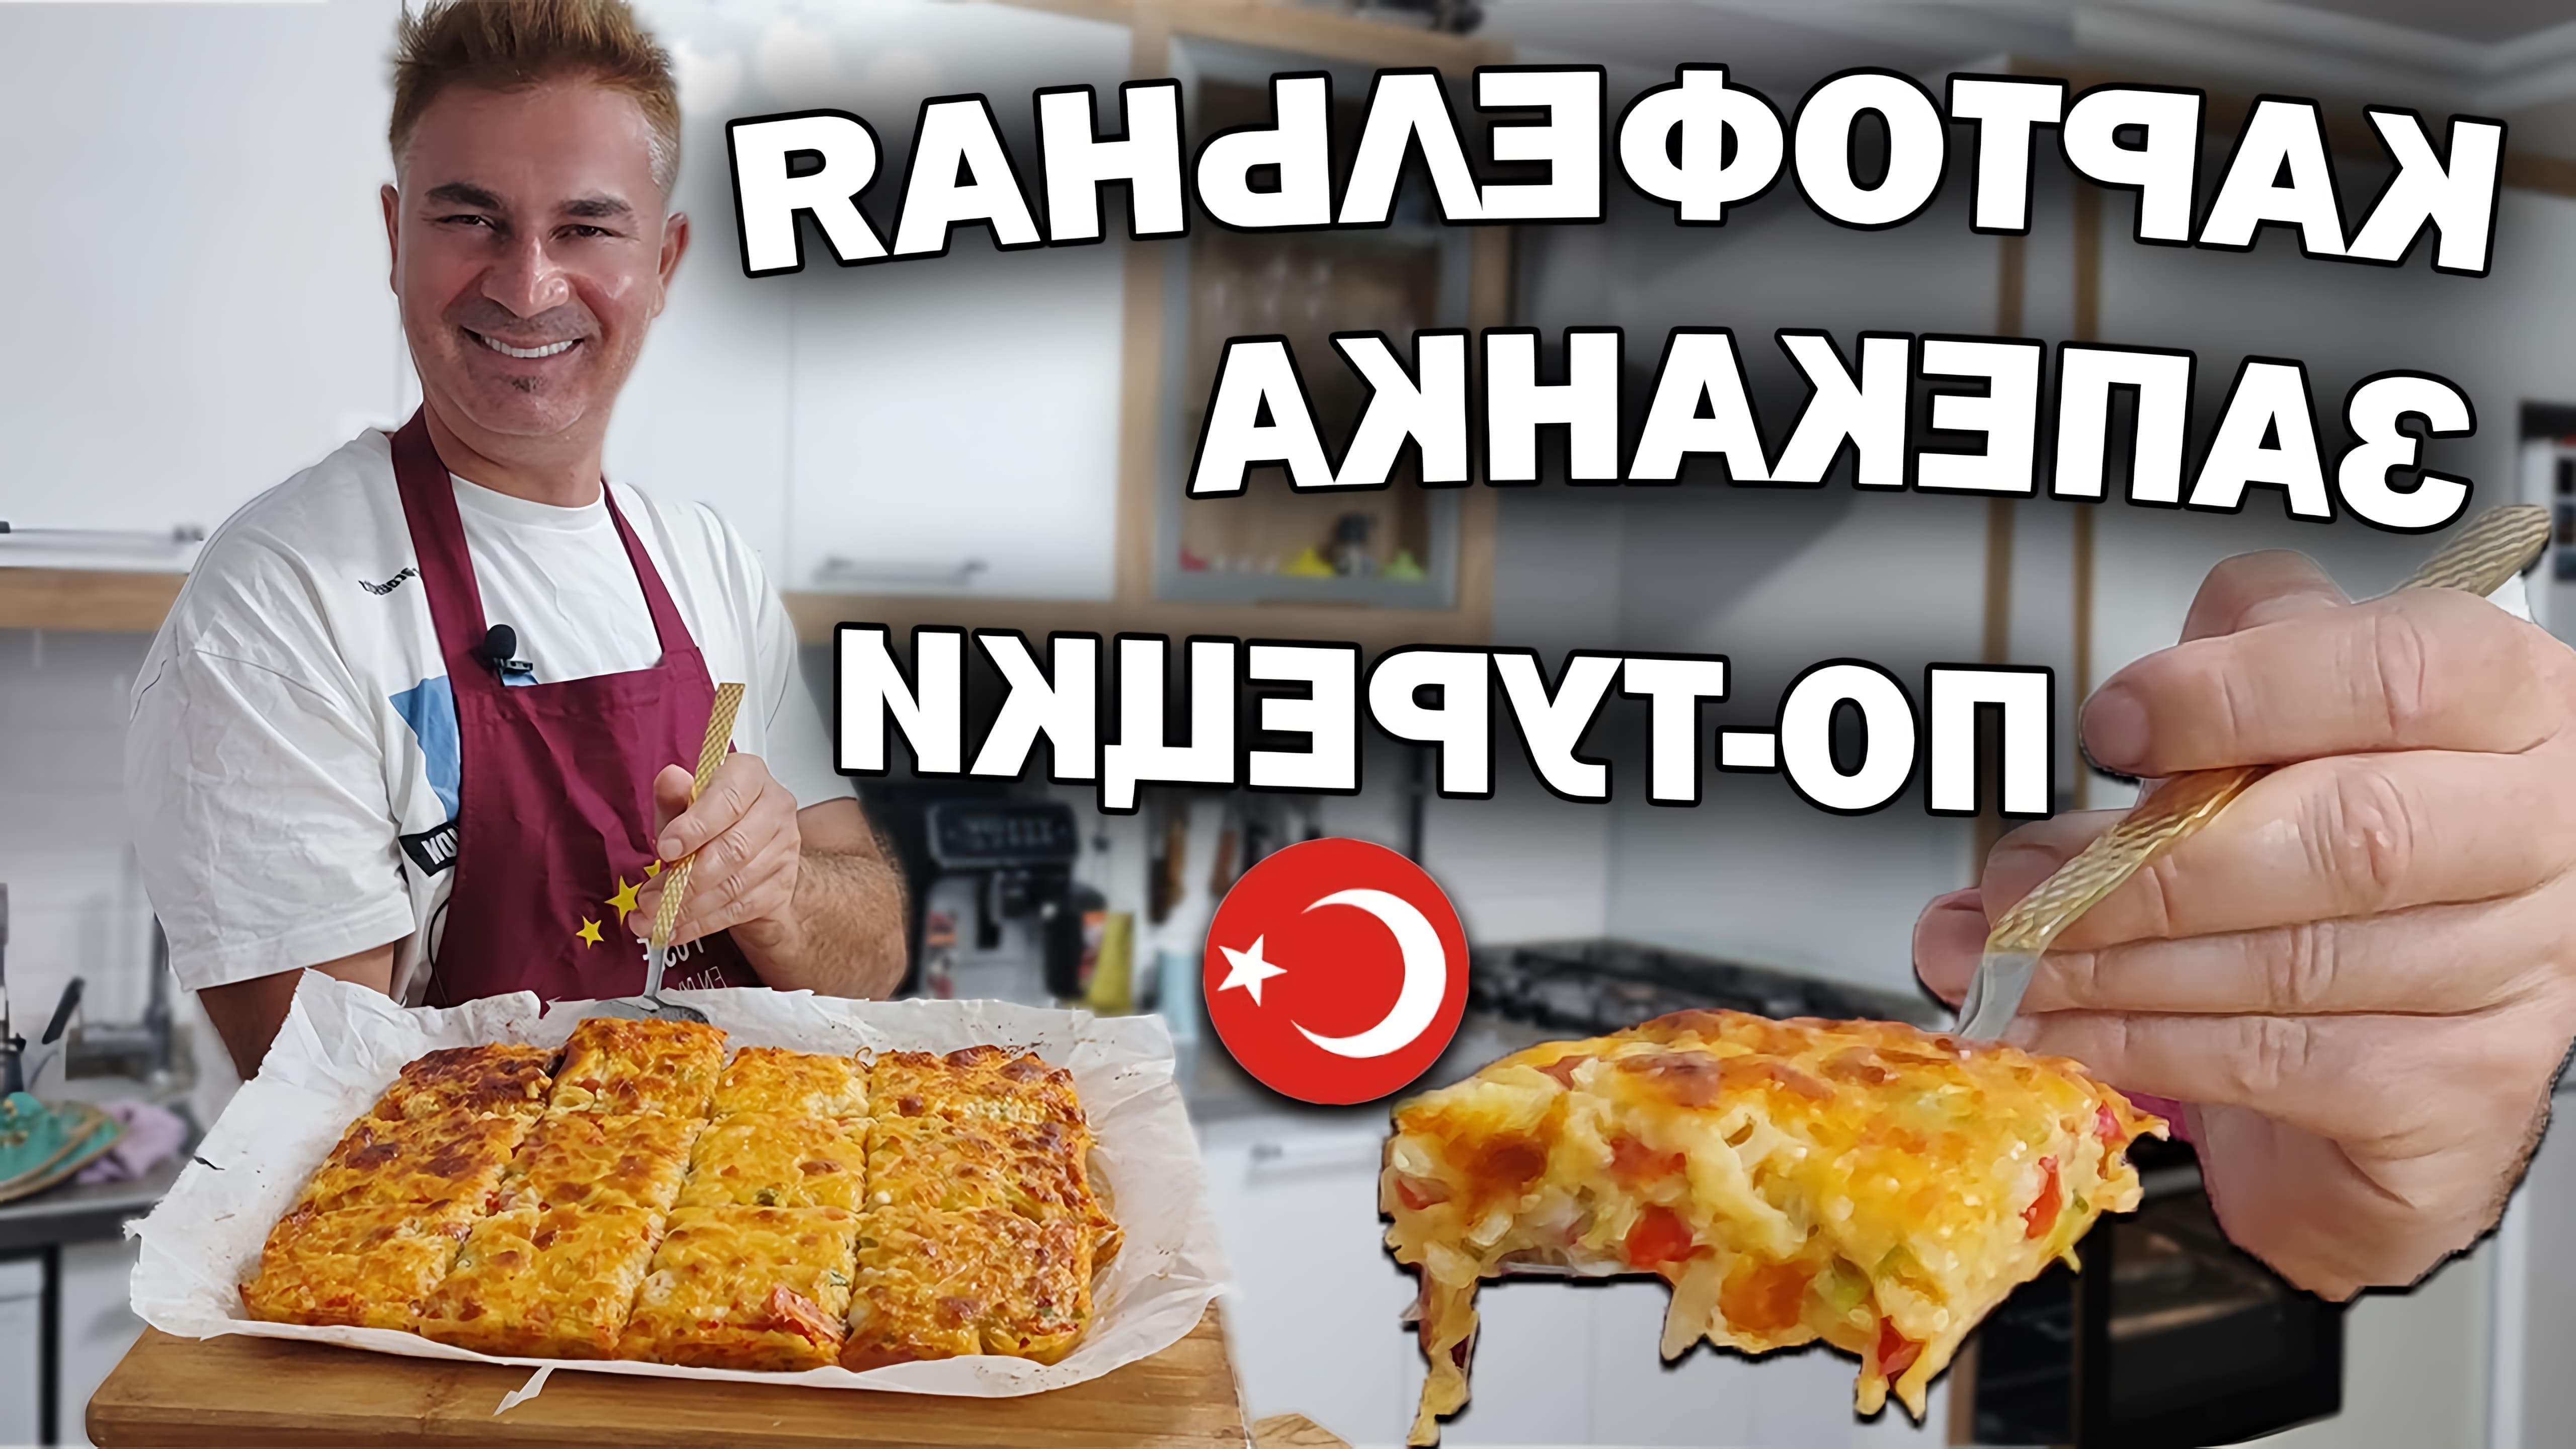 В этом видео демонстрируется рецепт приготовления картофельной запеканки по-турецки из продуктов, которые есть в холодильнике